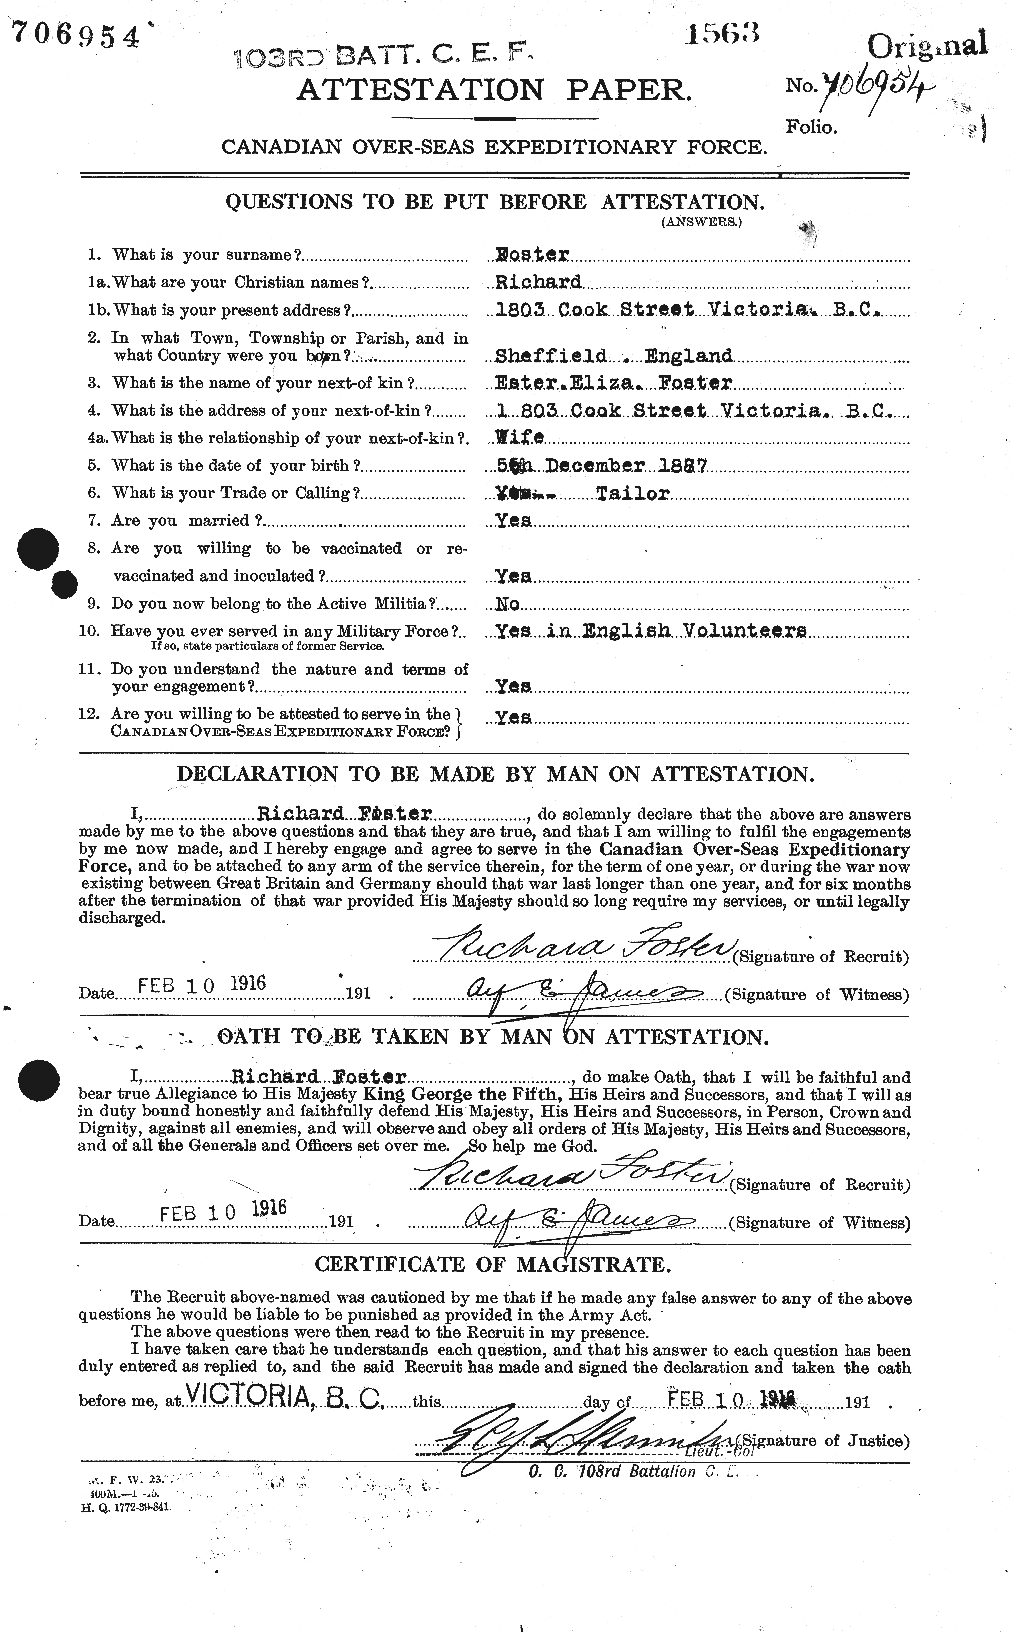 Dossiers du Personnel de la Première Guerre mondiale - CEC 335155a